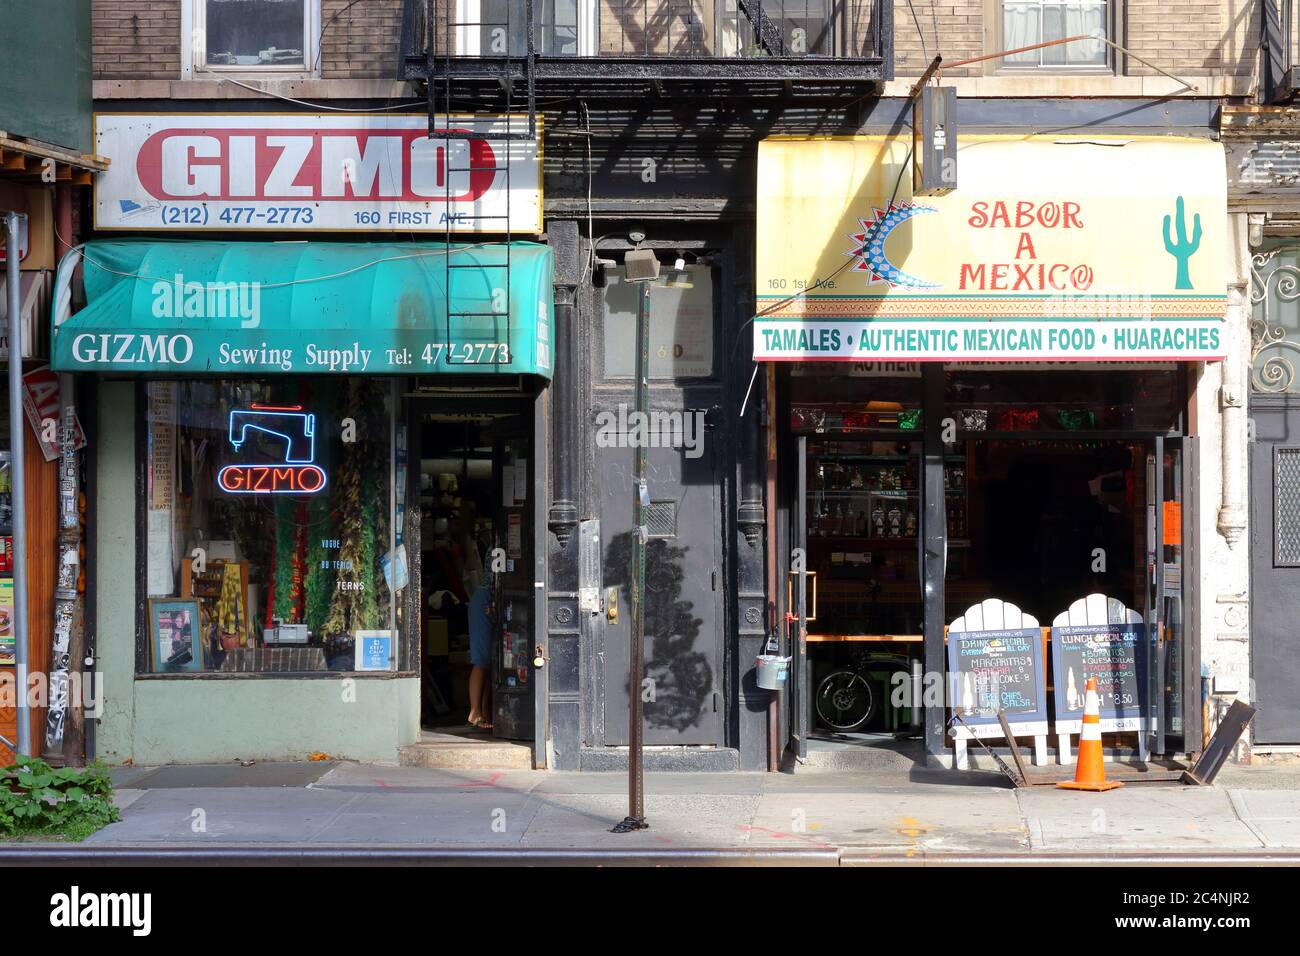 Gizmo, Sabor A Mexico, 160 First Ave, New York, NY. Façade extérieure d'une fourniture de couture, et une taqueria dans le quartier East Village de Manhattan. Banque D'Images